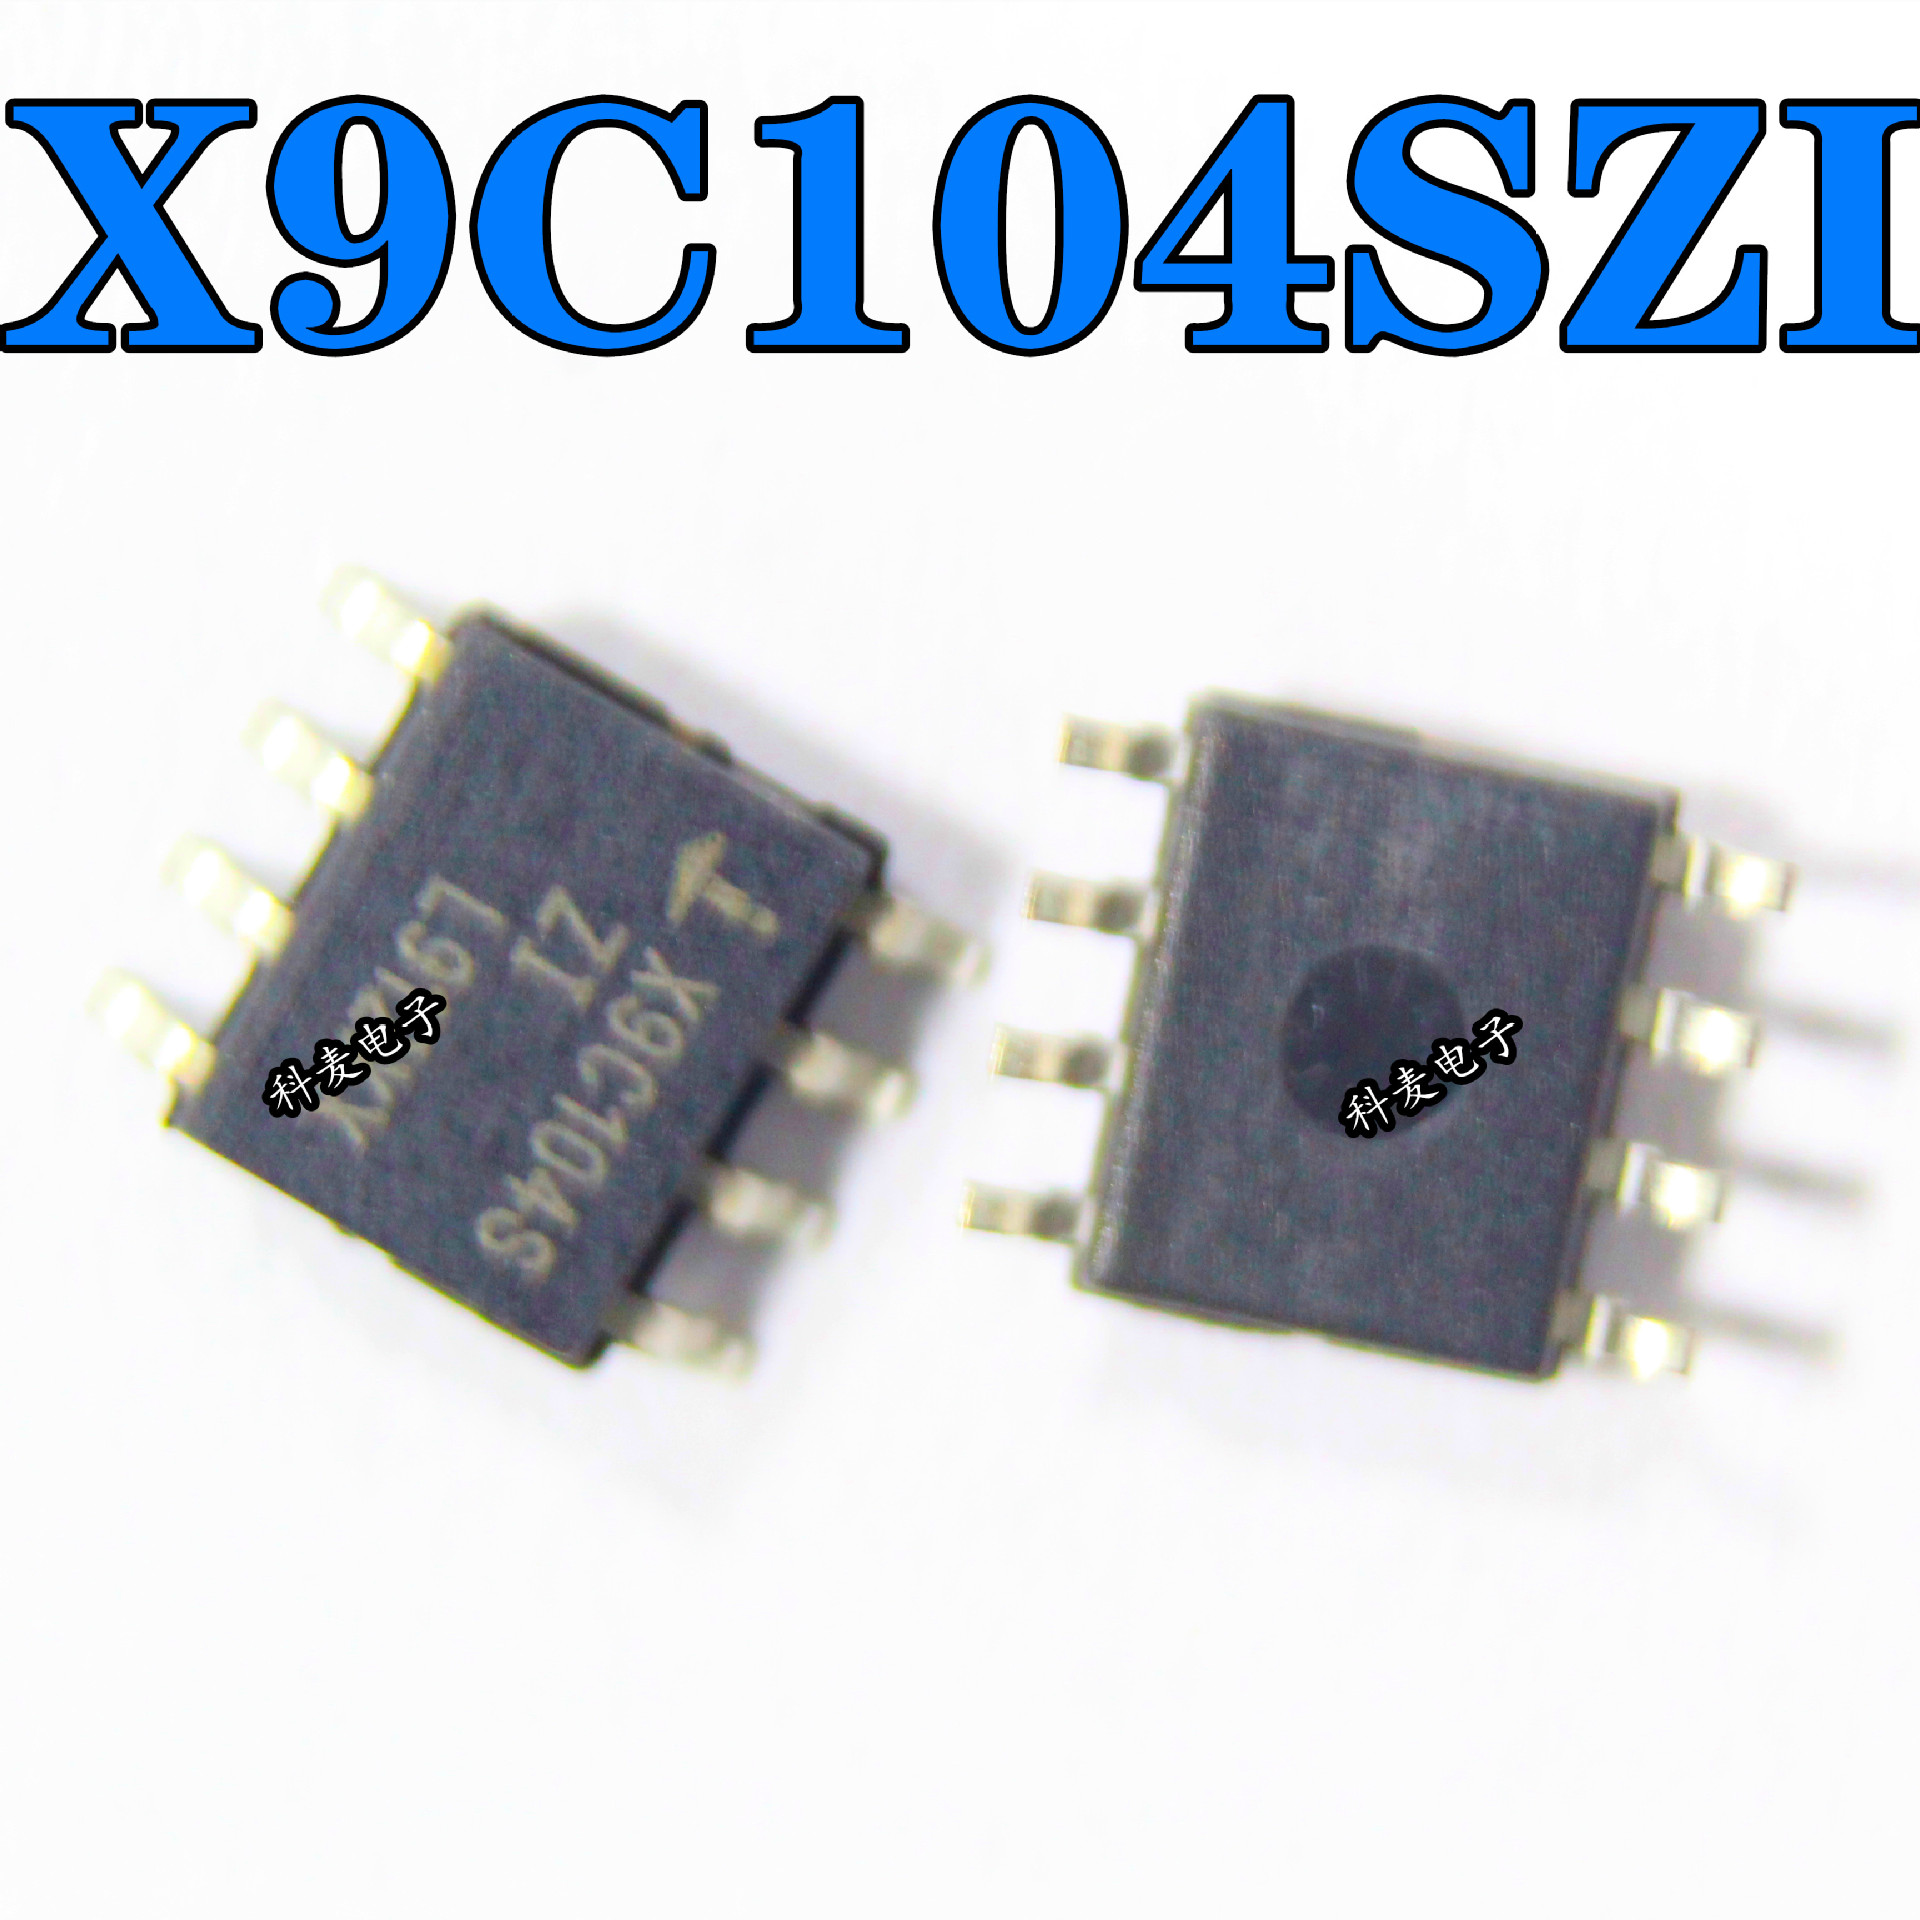 散新/全新 X9C104S X9C104SIZ X9C104SZI 贴片SOP8 数字电位器